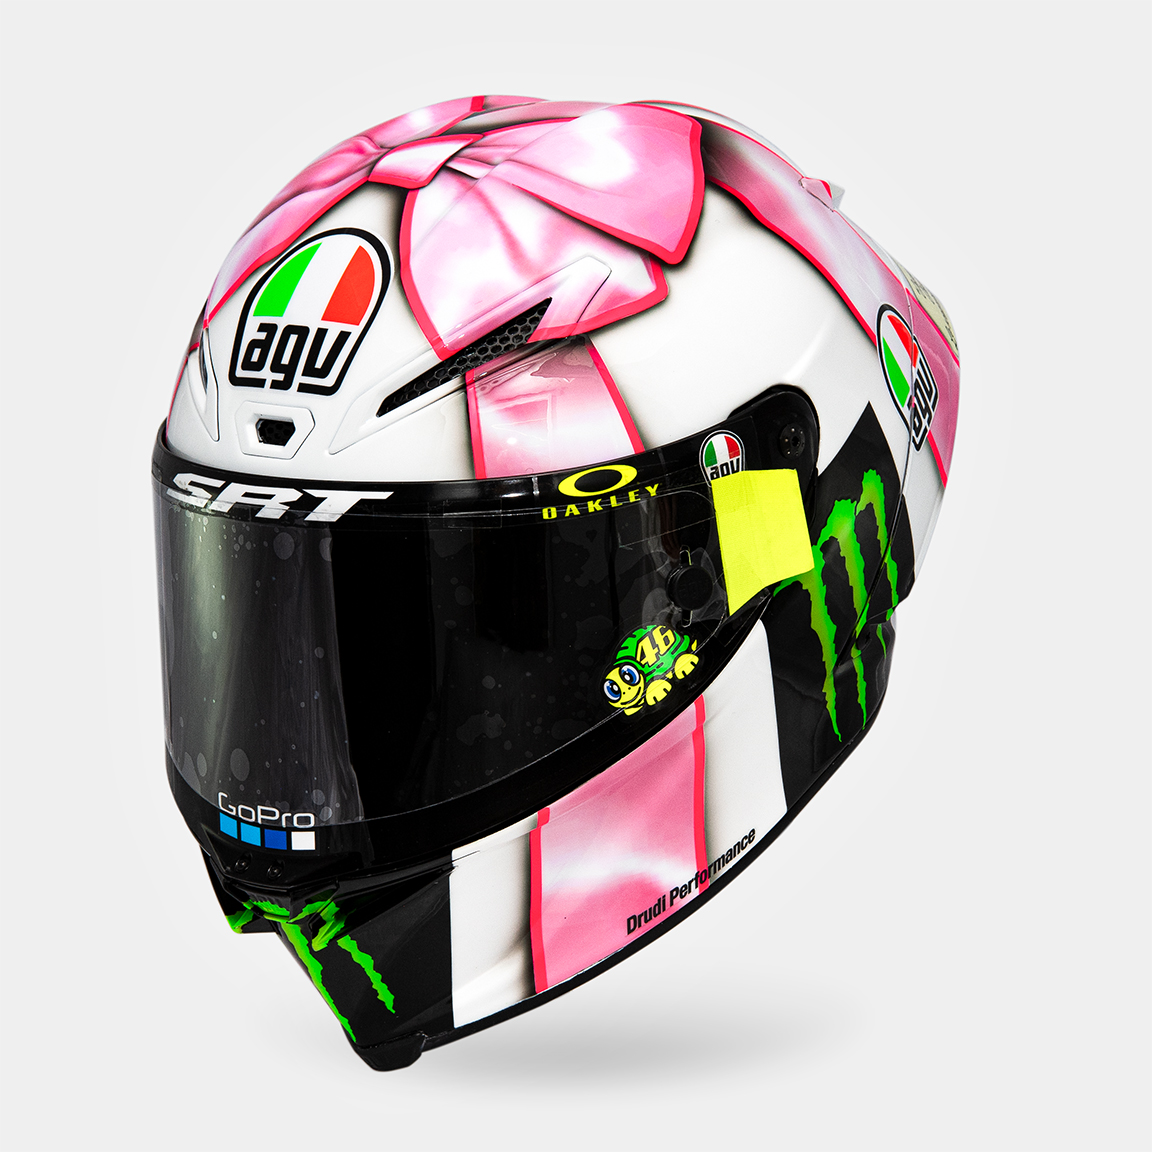 Новый шлем Валентино Росси для Гран-При Сан-Марино 2021 года